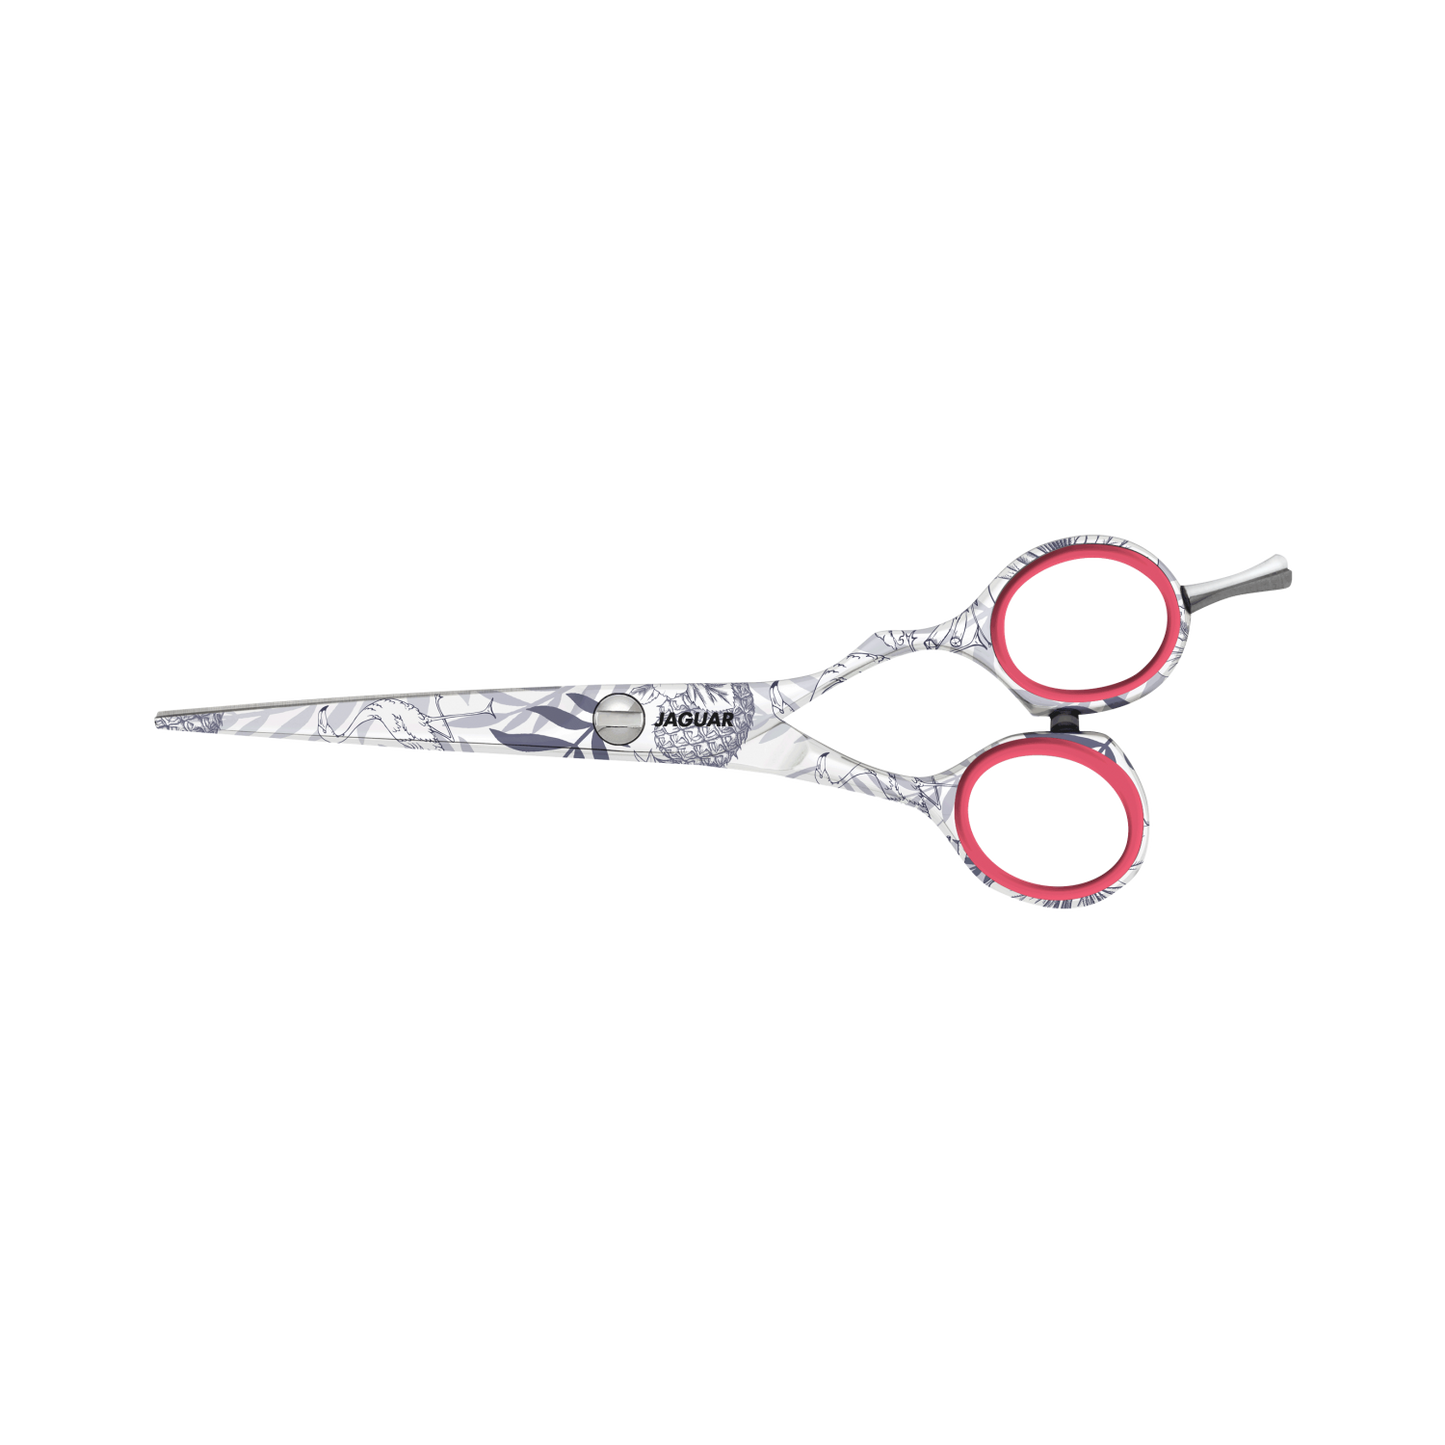 Jaguar 5.5" Flamingo Hairdressing Scissors